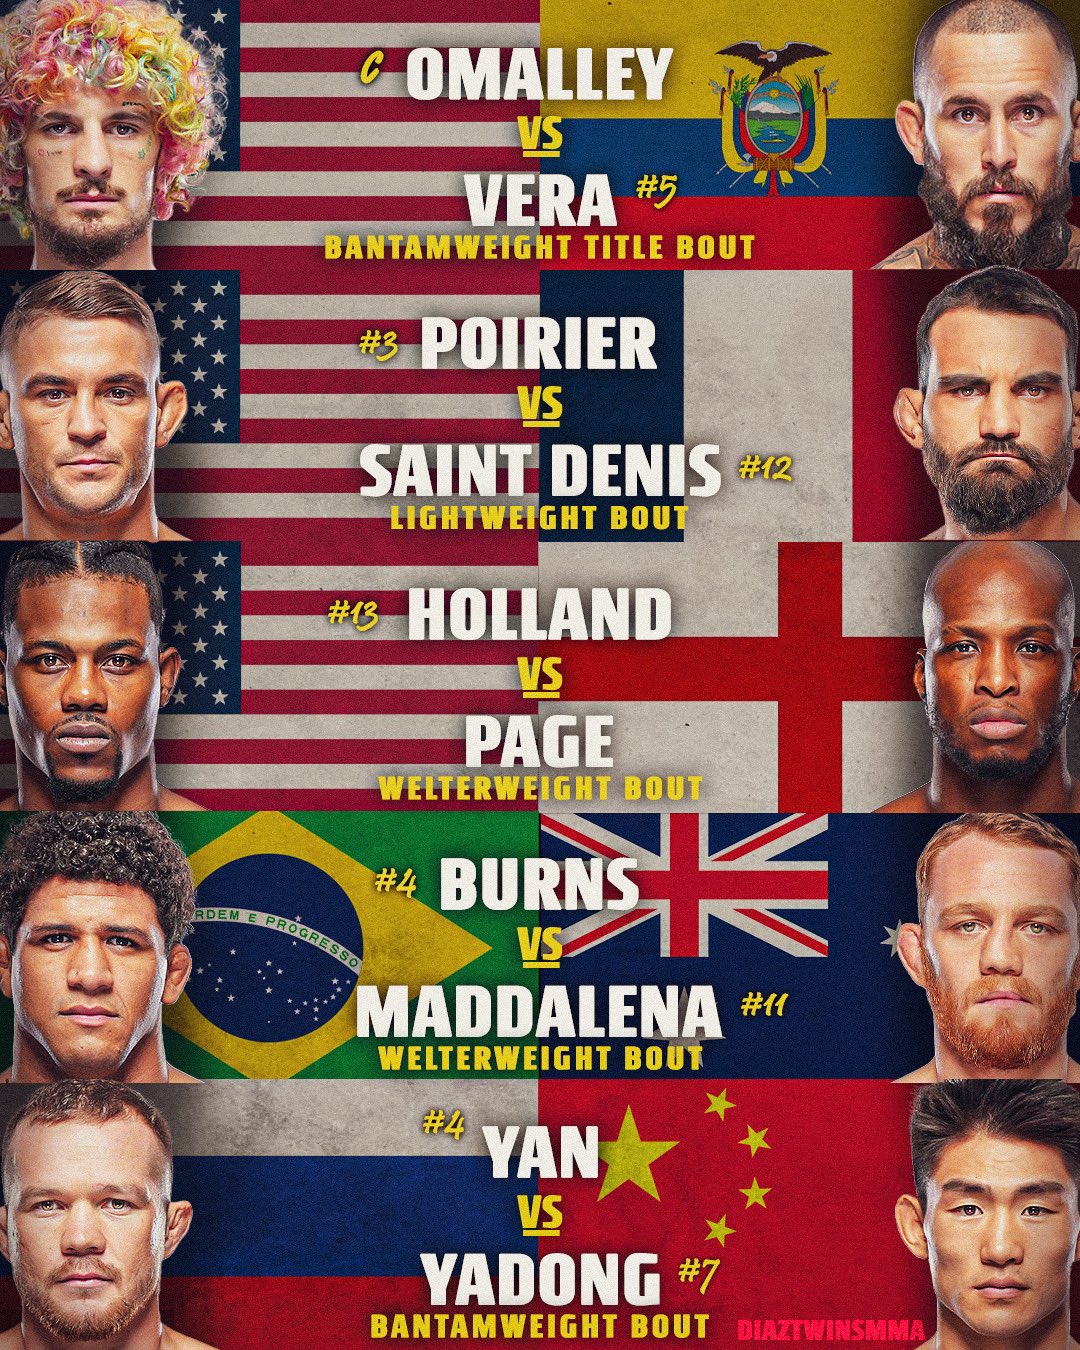 UFC 299 - Miami - Poster et affiche